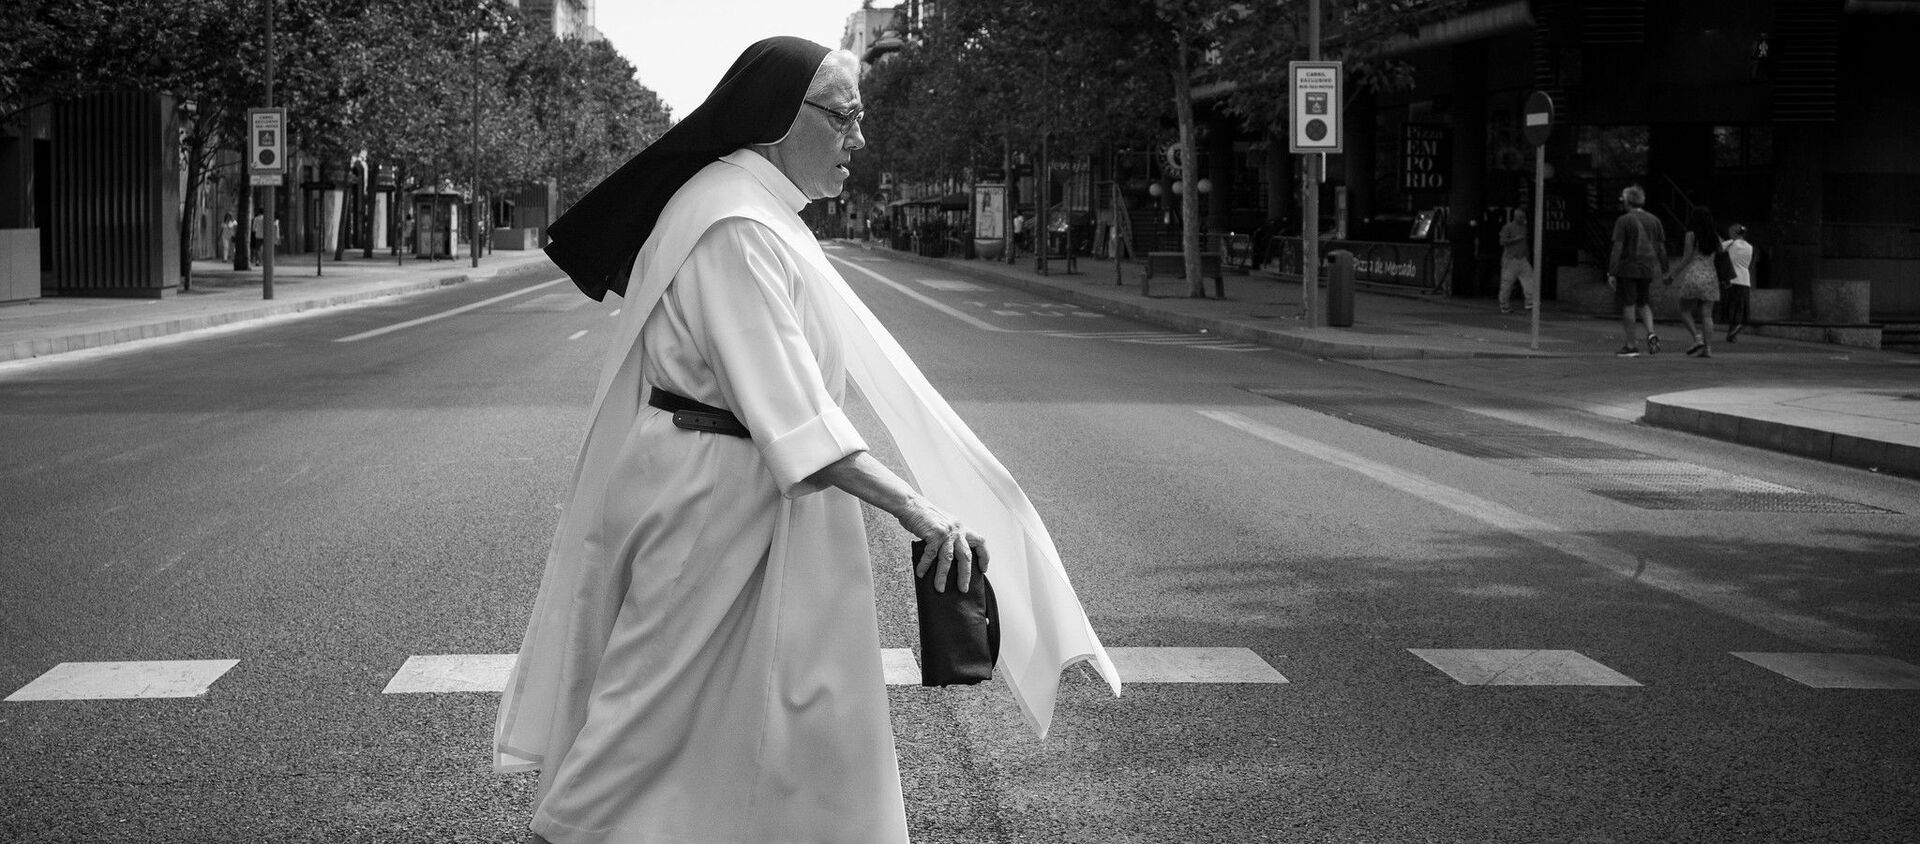 Imagen referencial de una monja caminando por la calle - Sputnik Mundo, 1920, 30.09.2020